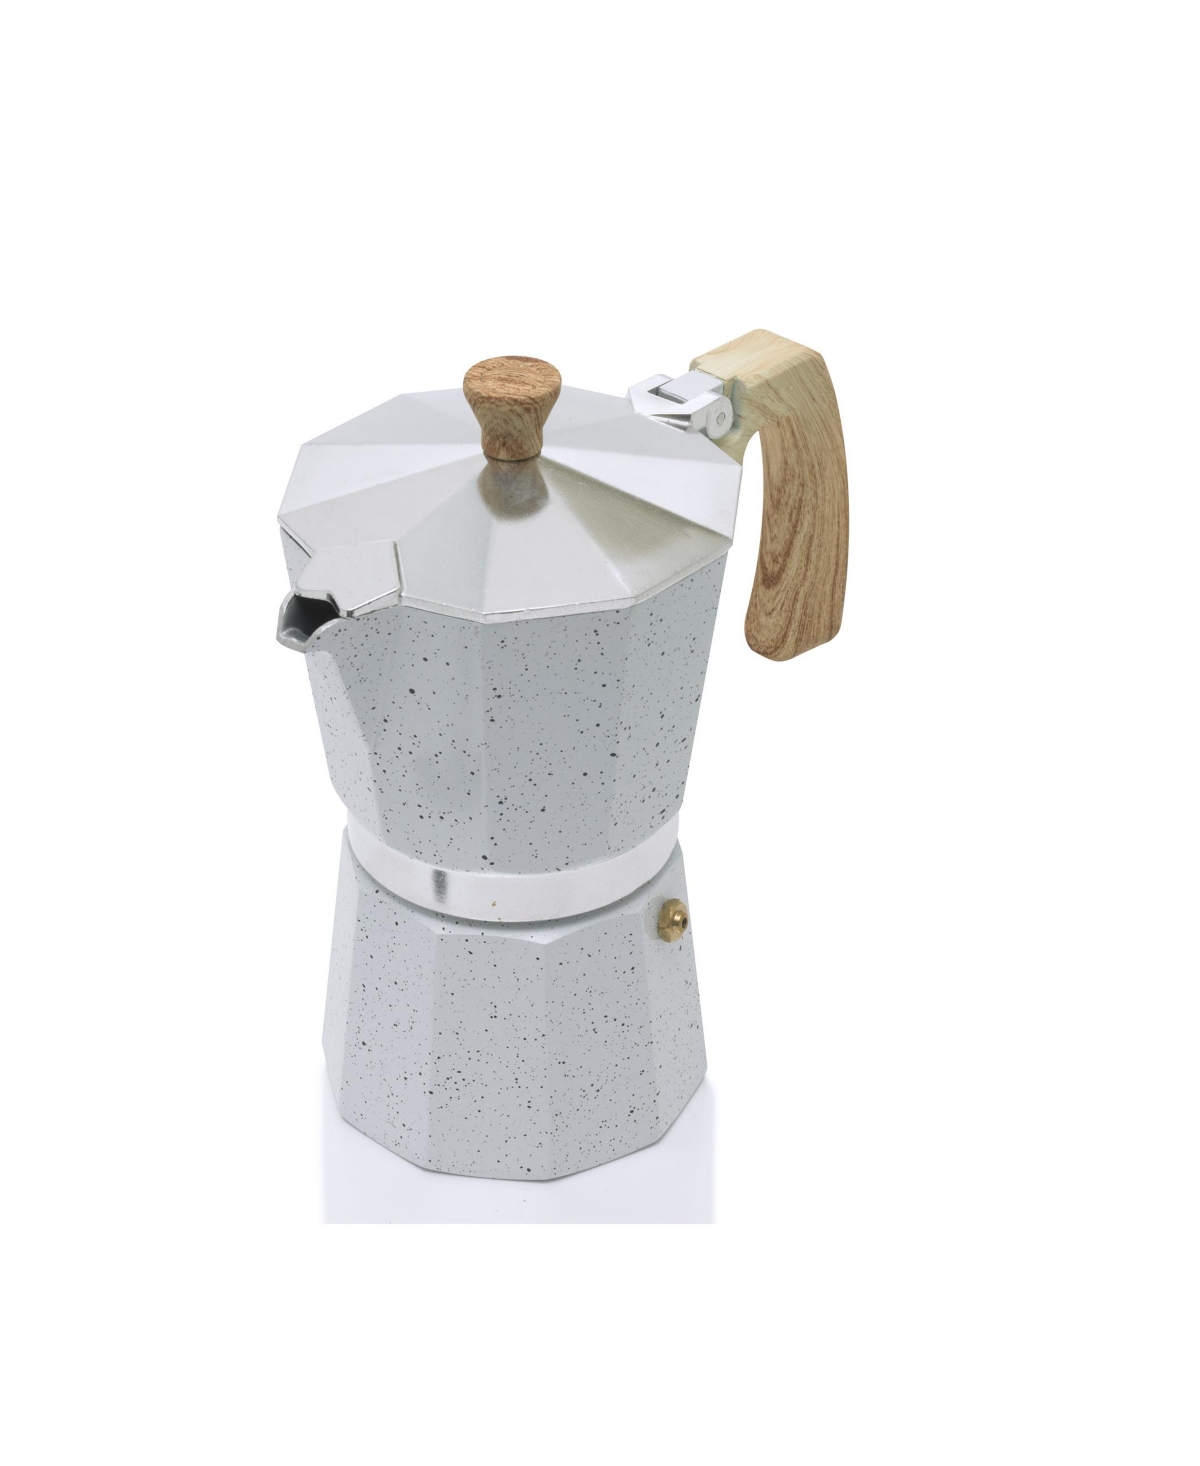 Sedona Aluminum 3 Cup Espresso Maker In White